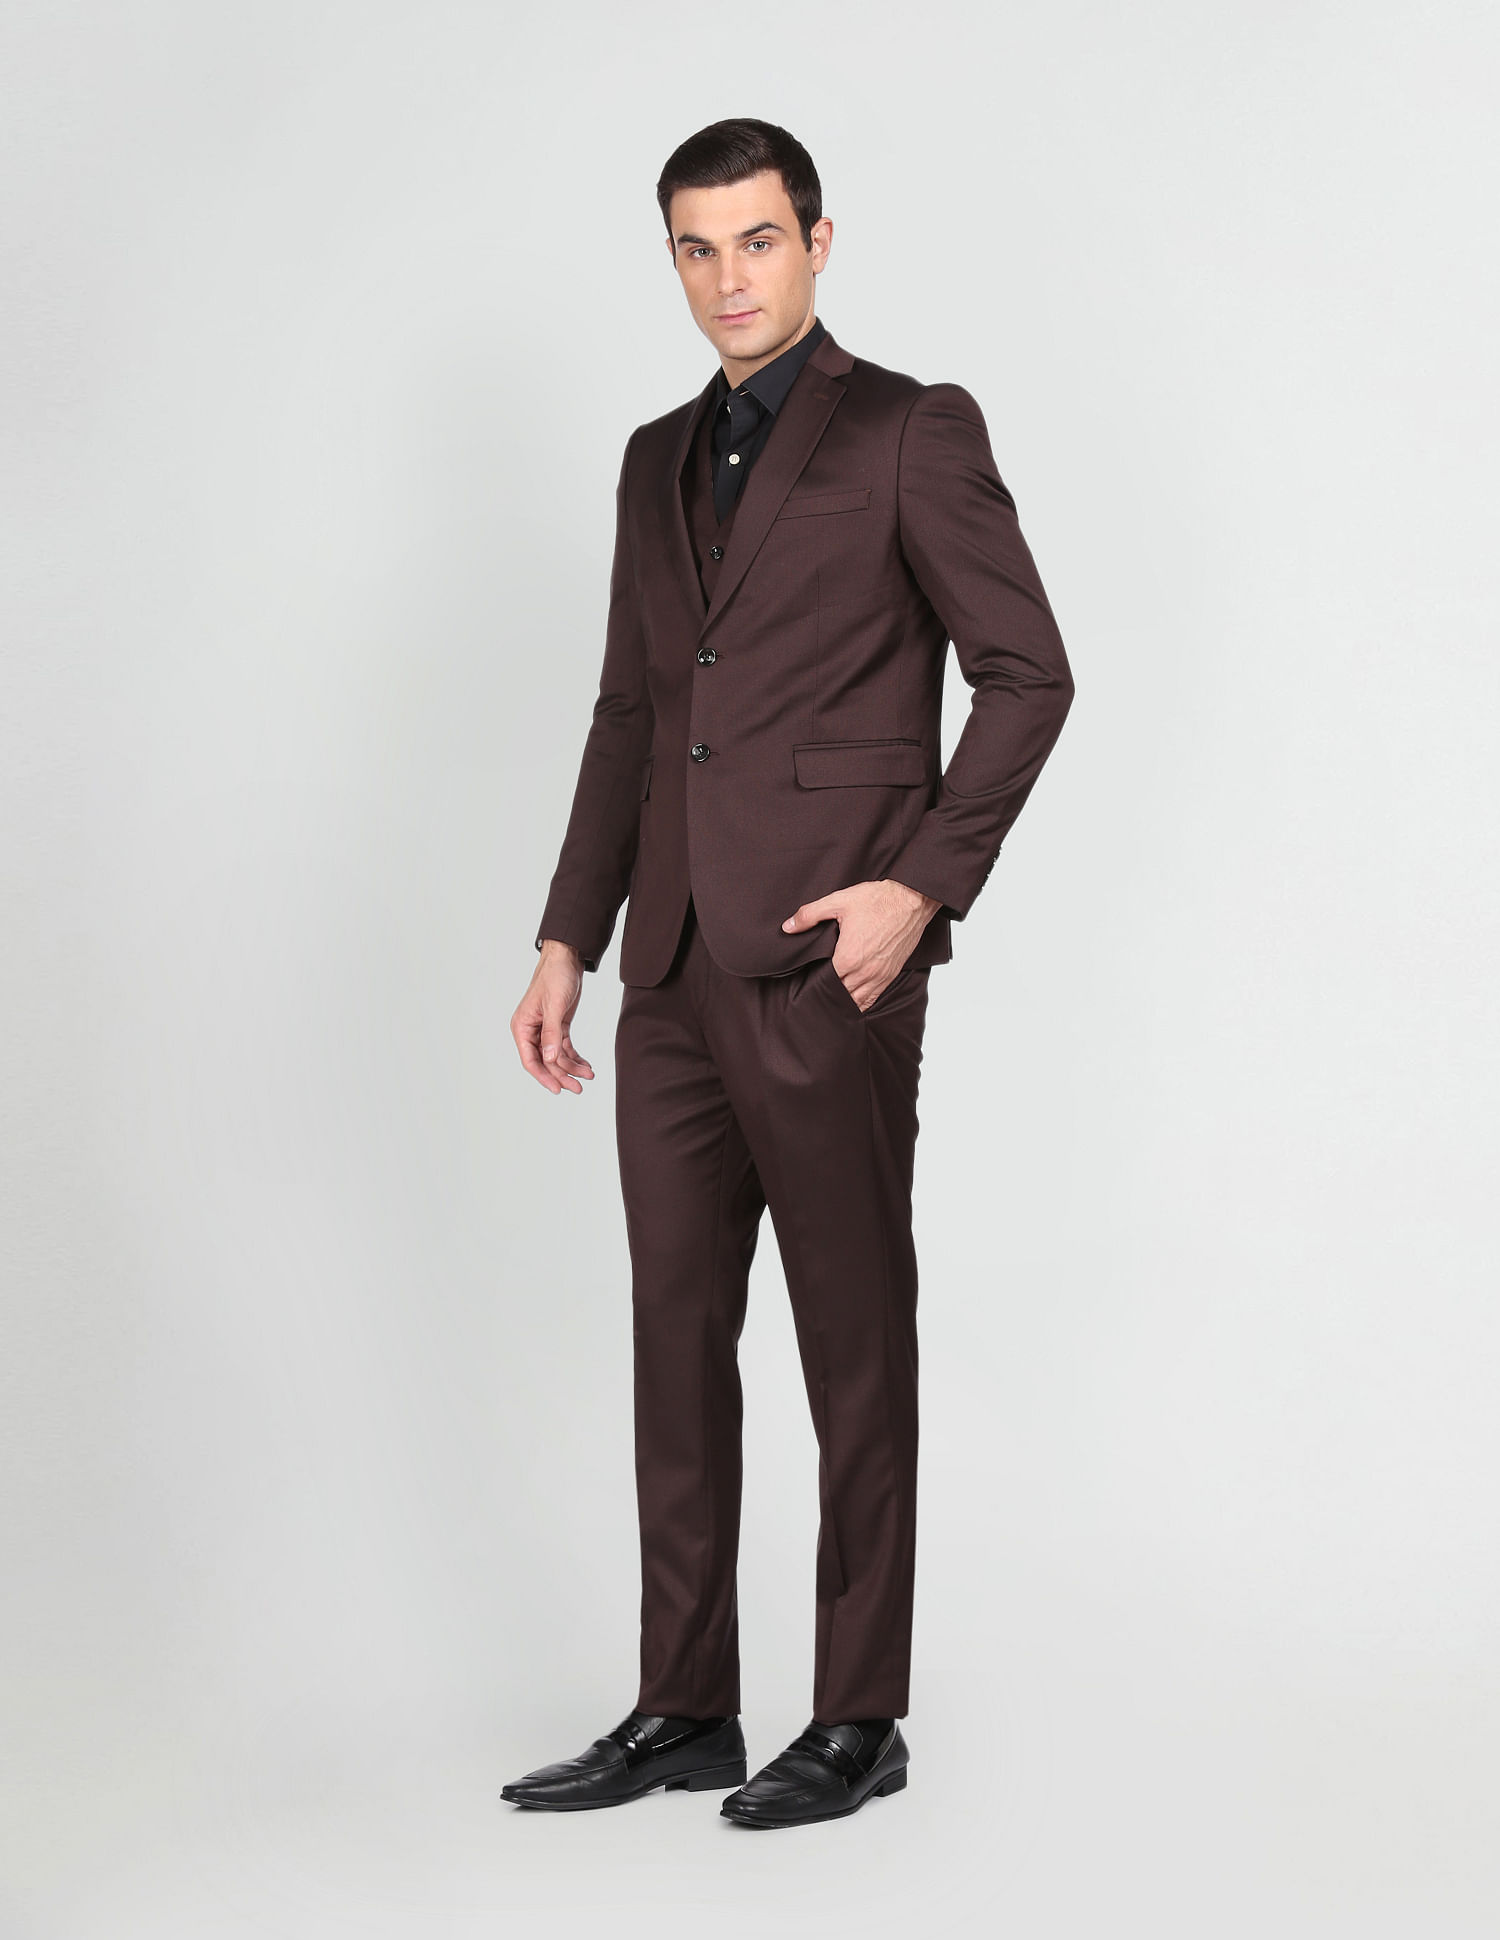 Buy Arrow Men's Wool Suit (AFVSU5552_Blue_48 FS) at Amazon.in